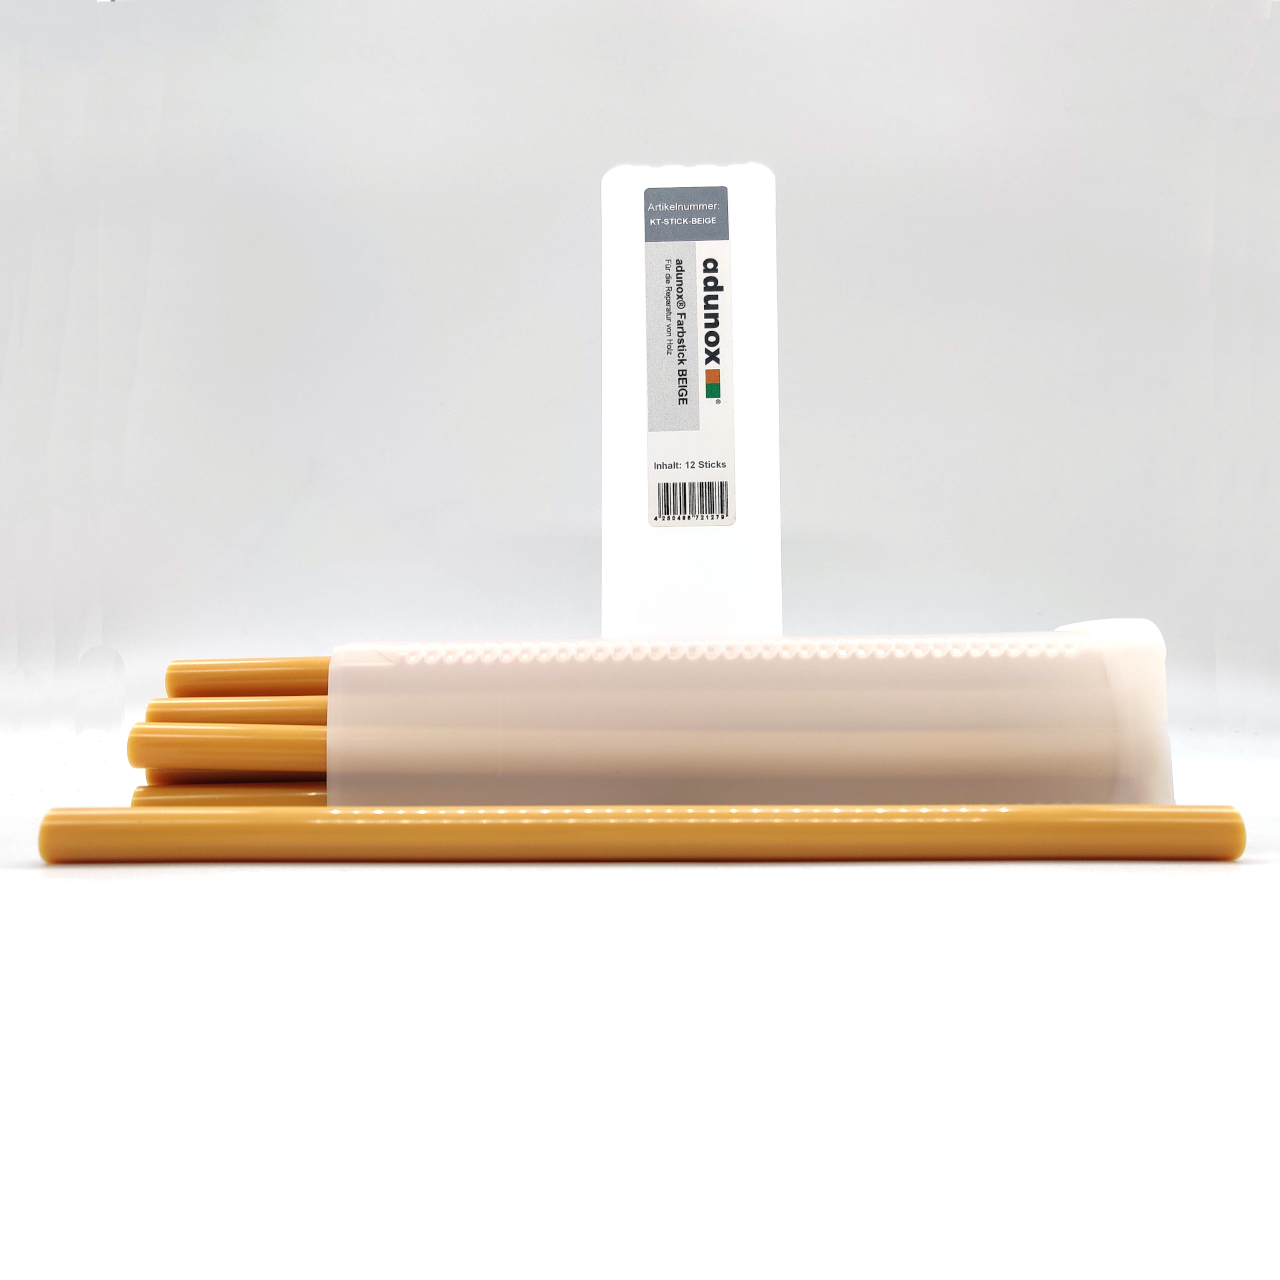 adunox® Farbsticks für die Reparatur von Holz | BEIGE | 12 Sticks